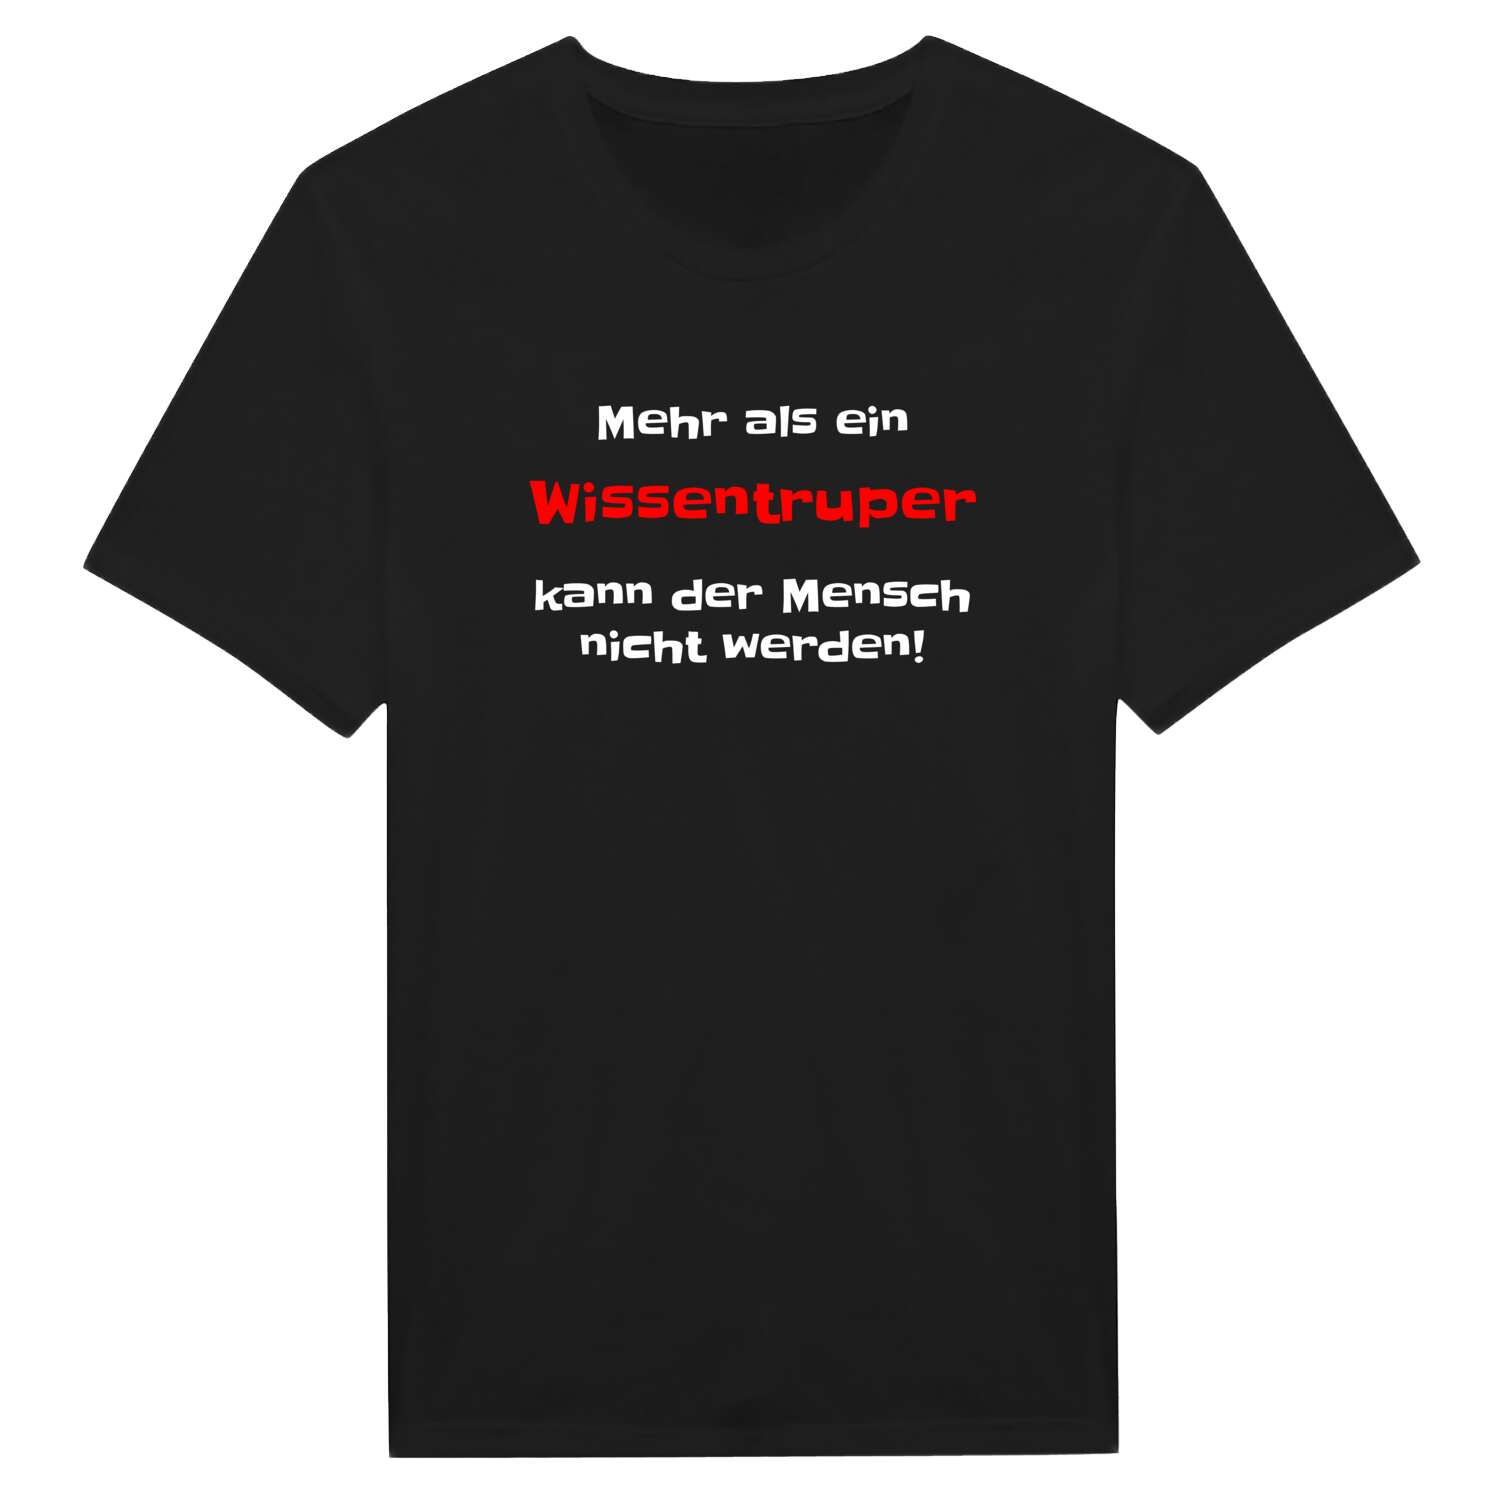 Wissentrup T-Shirt »Mehr als ein«